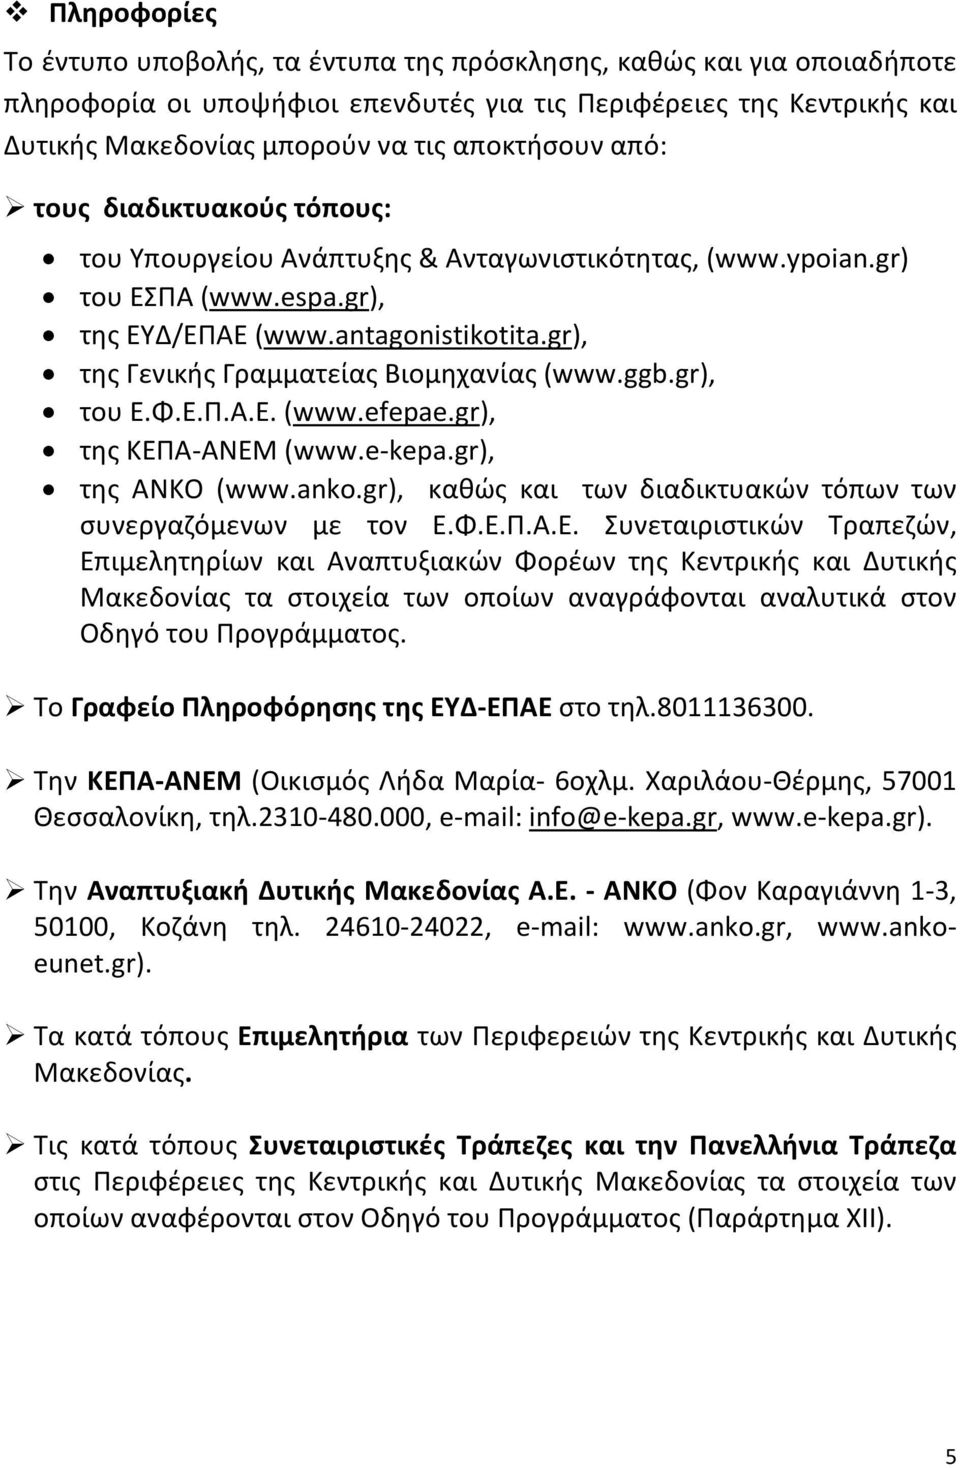 gr), της Γενικής Γραμματείας Βιομηχανίας (www.ggb.gr), του Ε.Φ.Ε.Π.Α.Ε. (www.efepae.gr), της ΚΕΠΑ-ΑΝΕΜ (www.e-kepa.gr), της ΑΝΚΟ (www.anko.